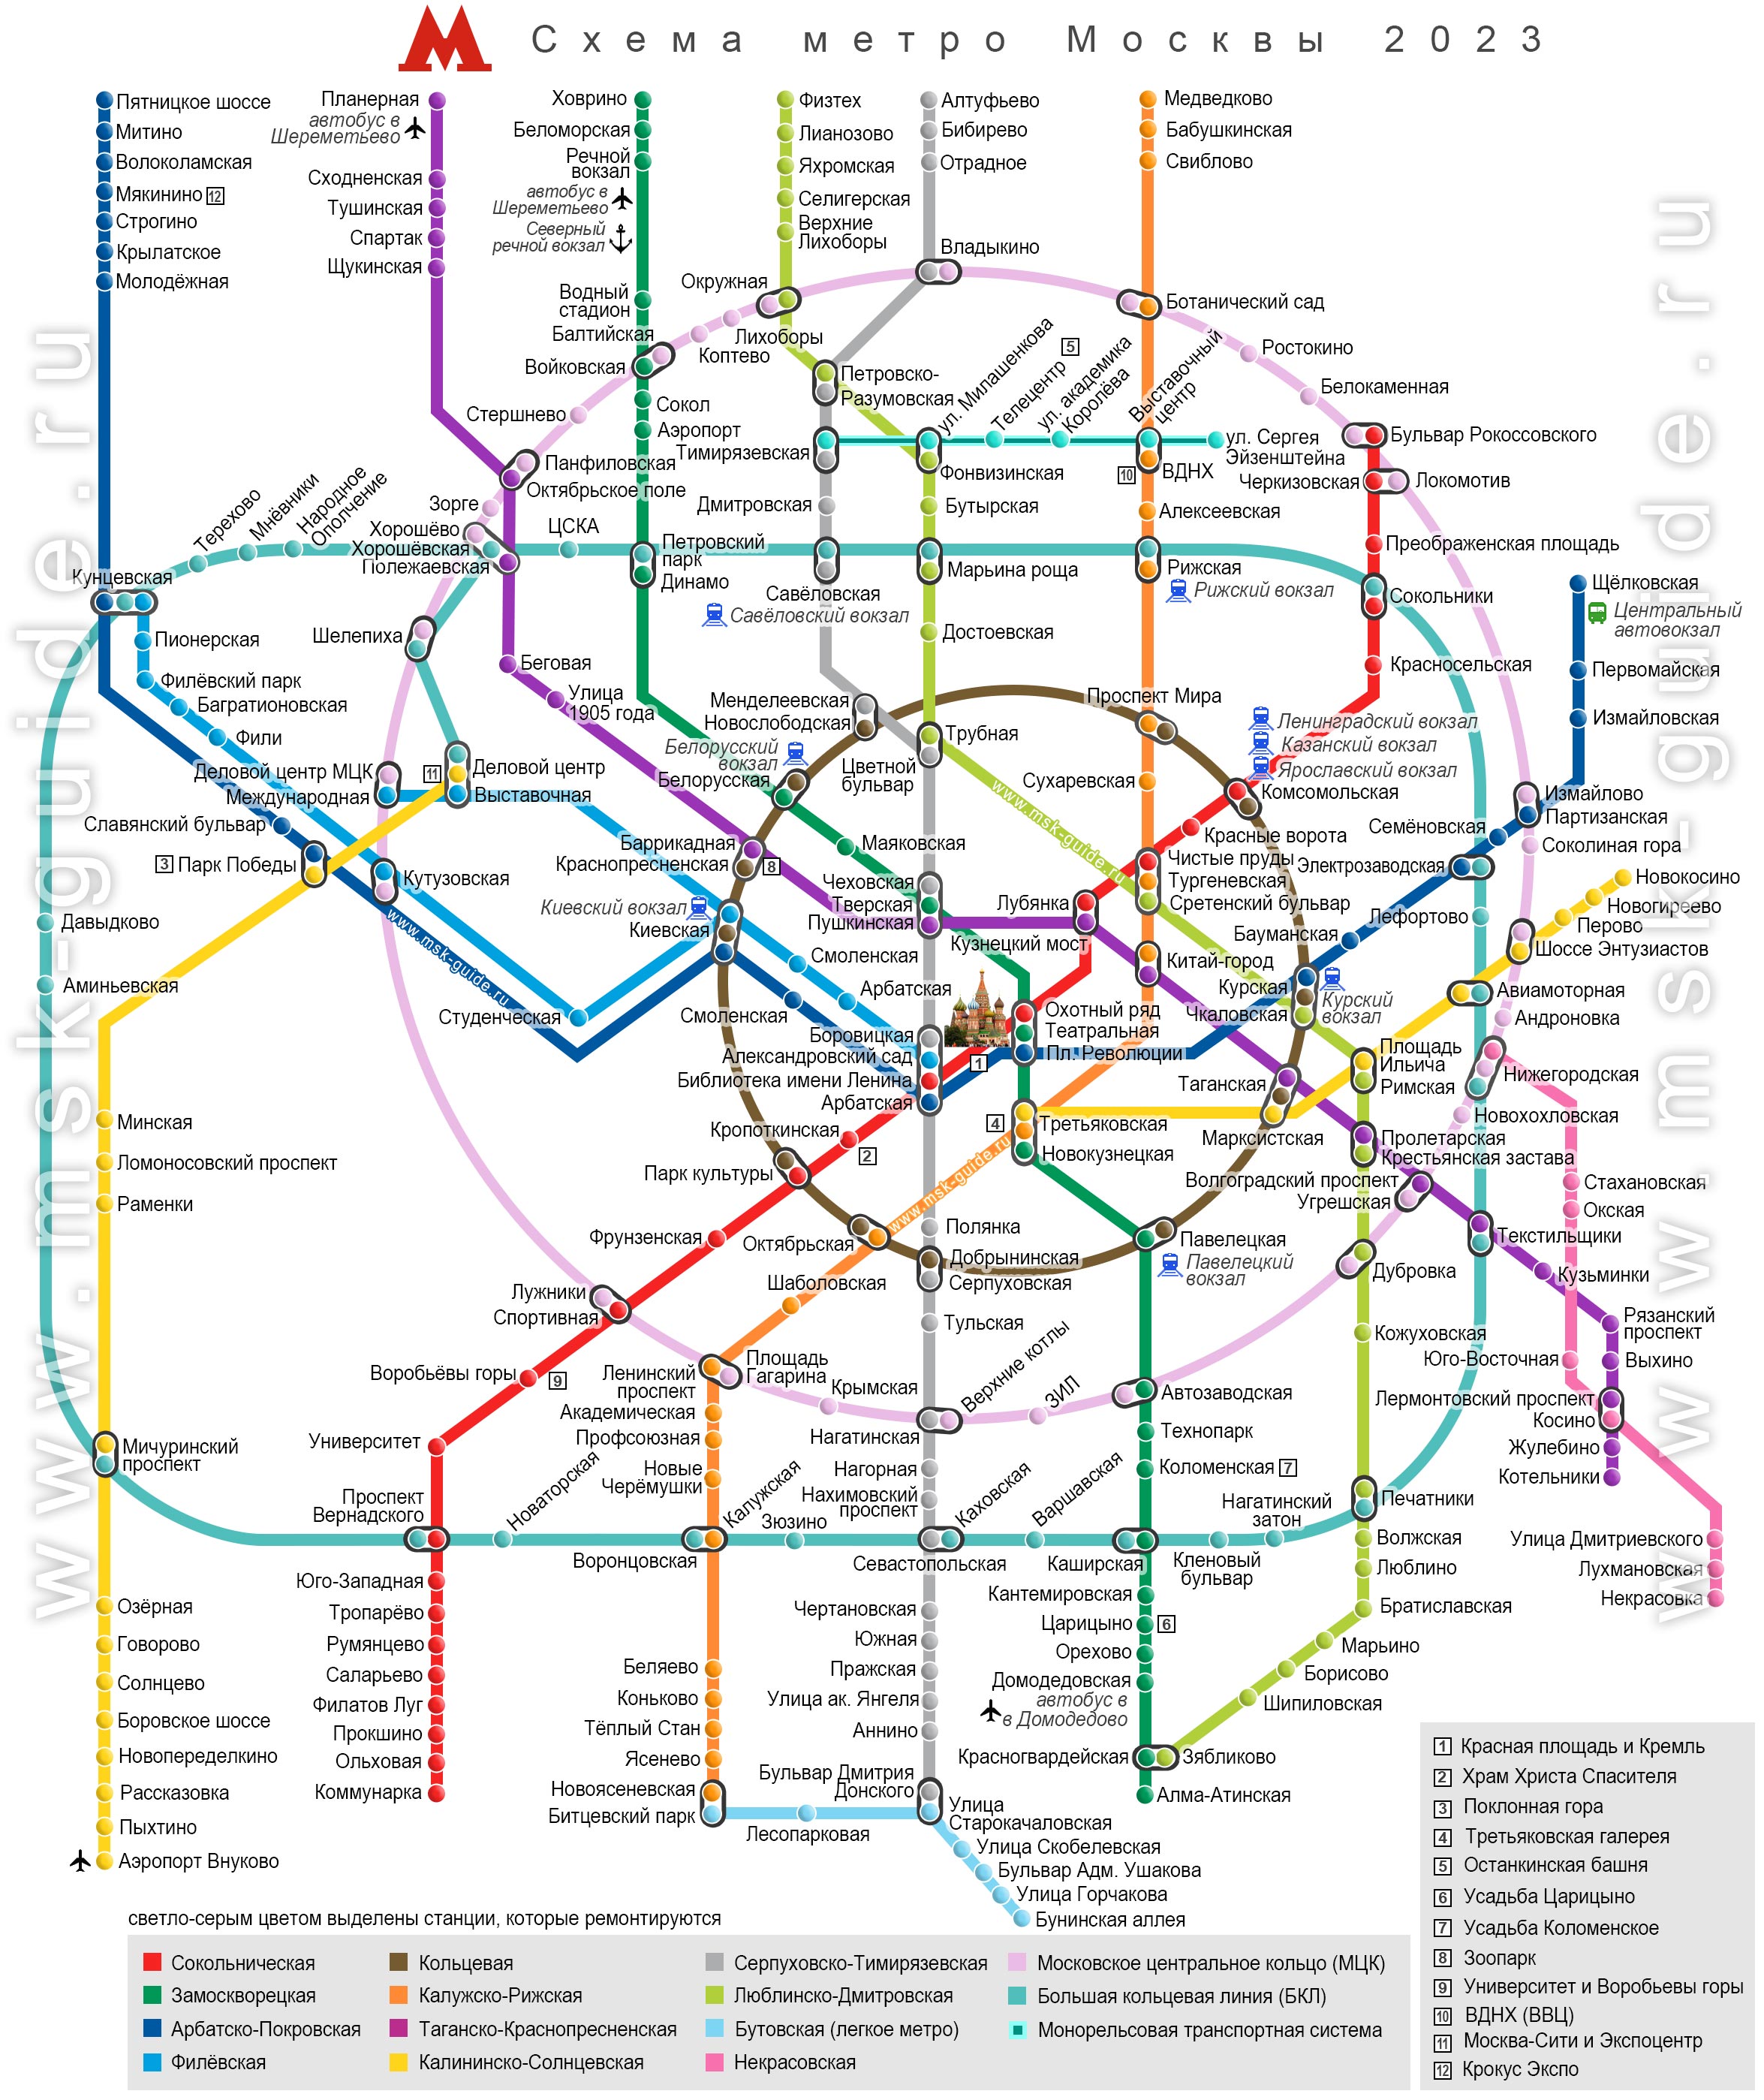 Новая карта метро москвы 2023